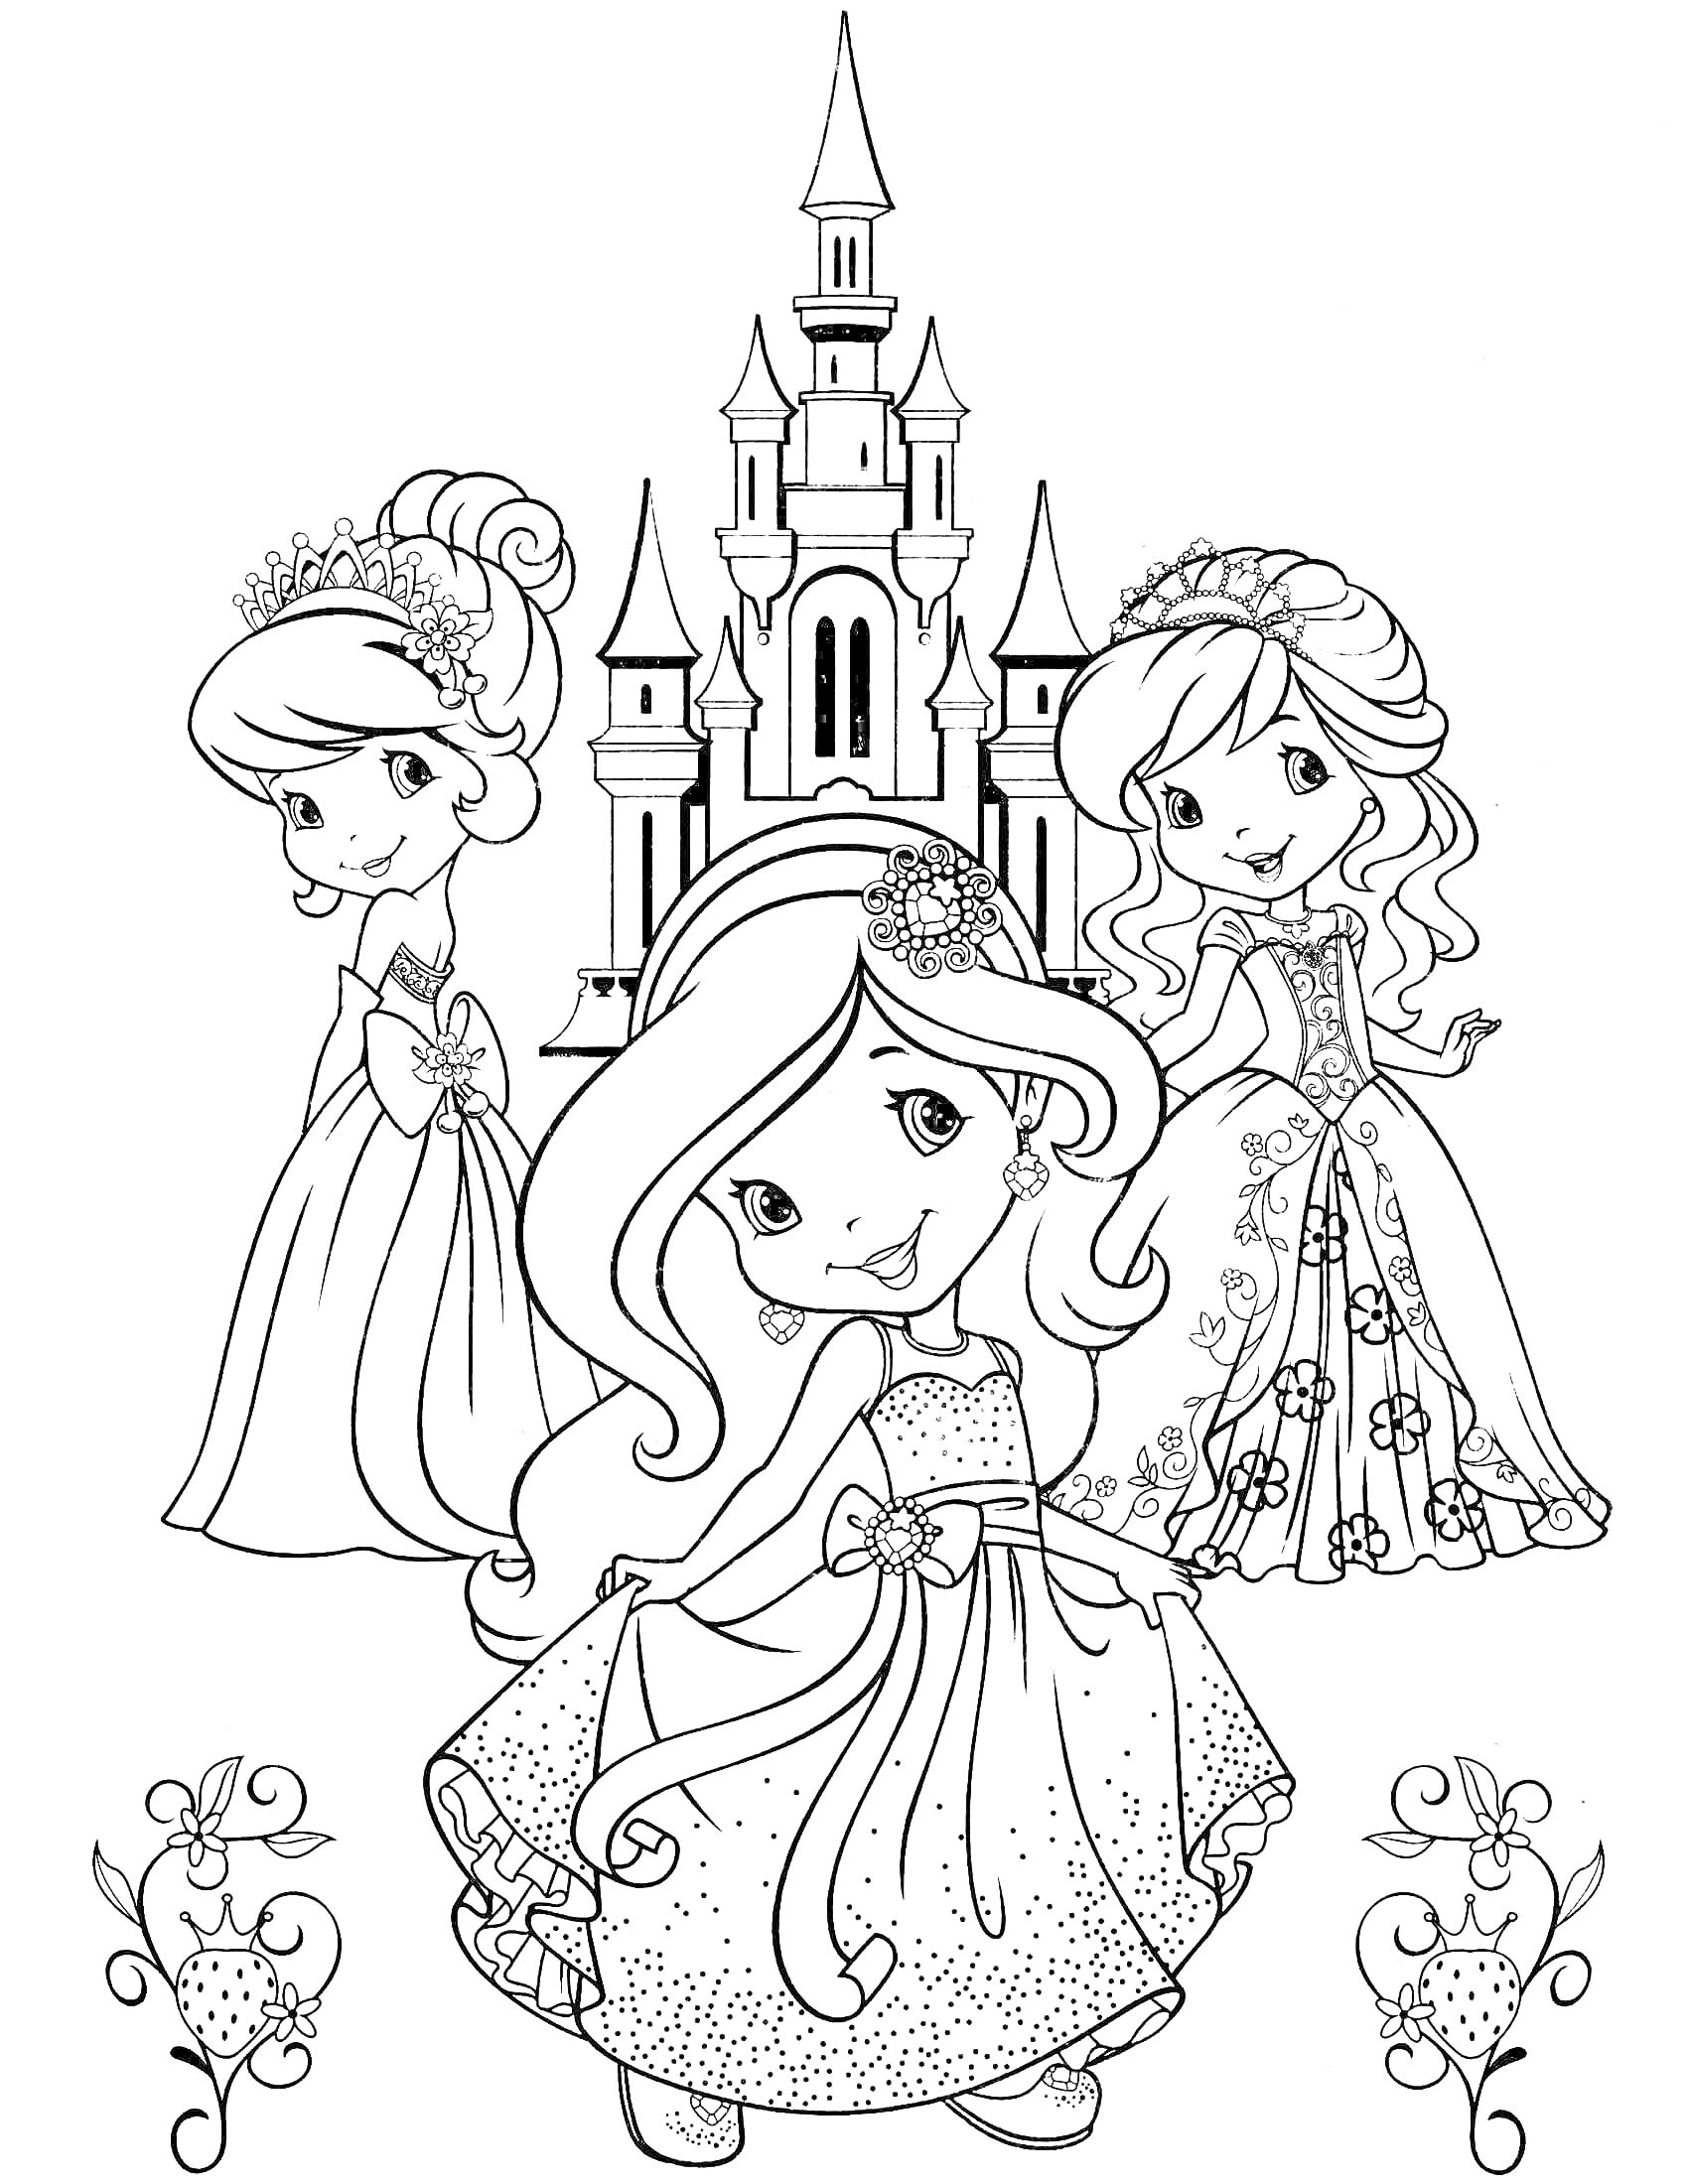 Раскраска Три принцессы на фоне замка с цветочным орнаментом внизу